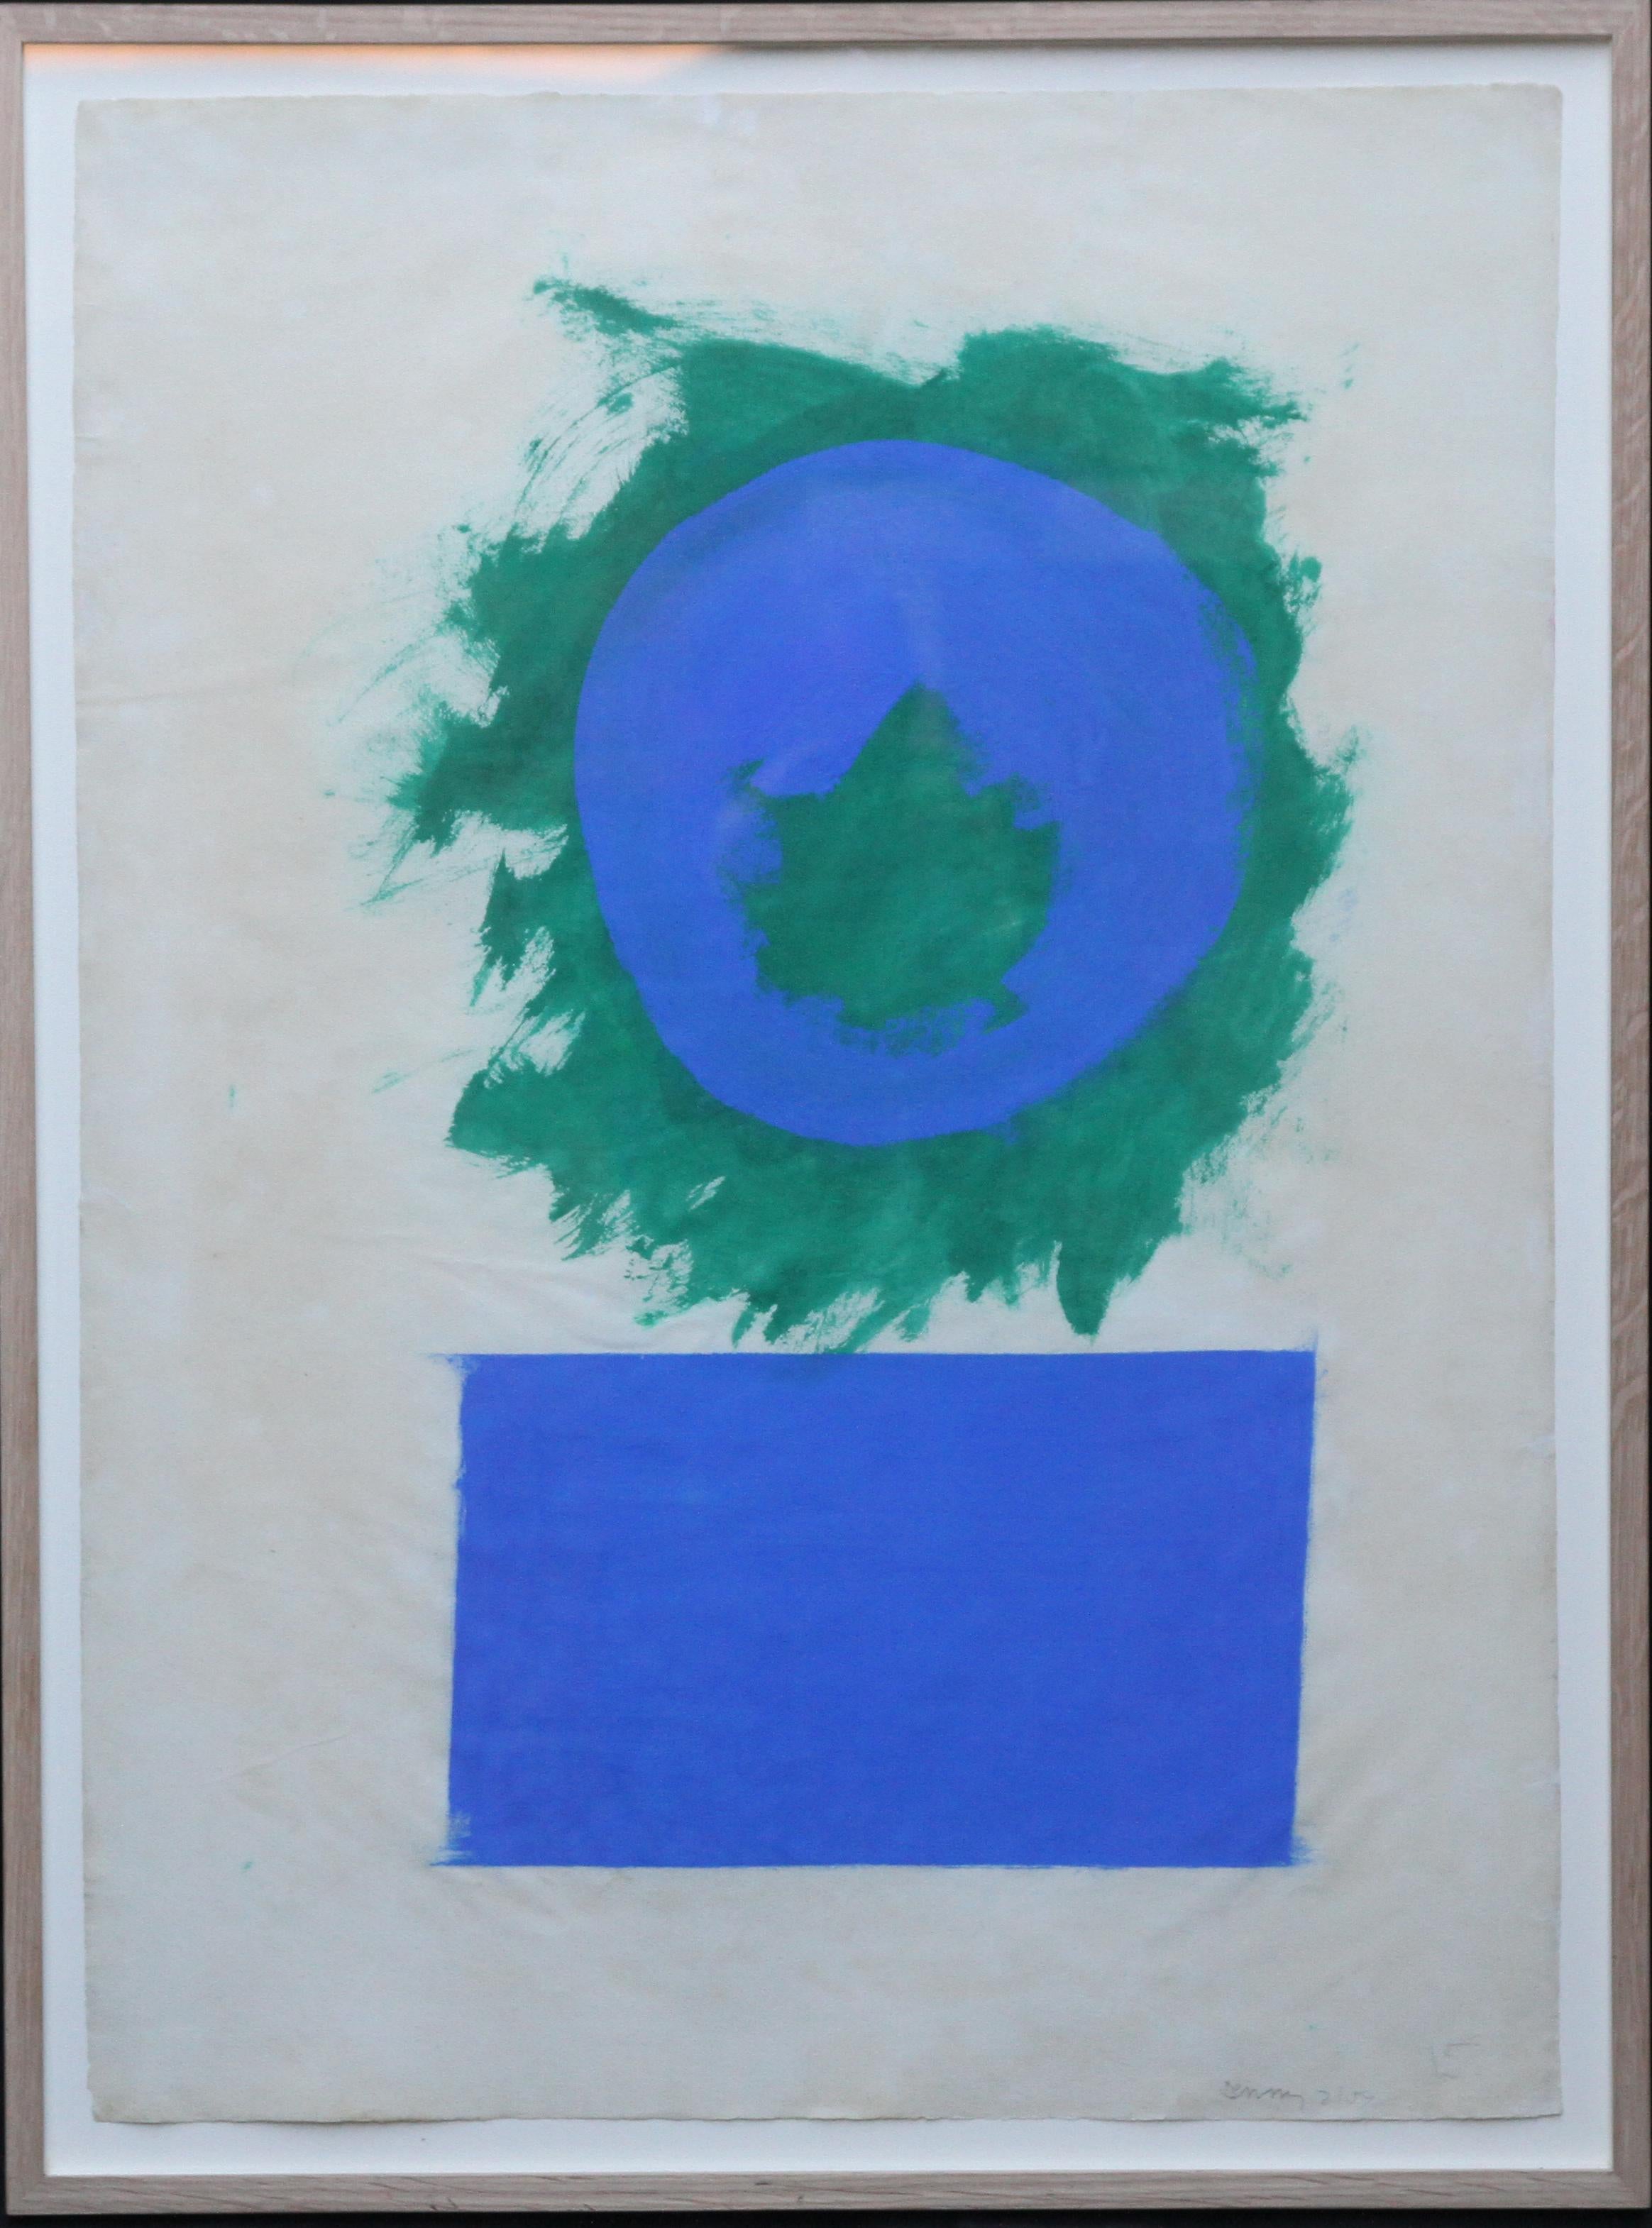 Abstract Painting Robyn Denny - Formes bleues et vertes - Art abstrait britannique des années 50 - Peinture à l'huile sur papier couleurfield